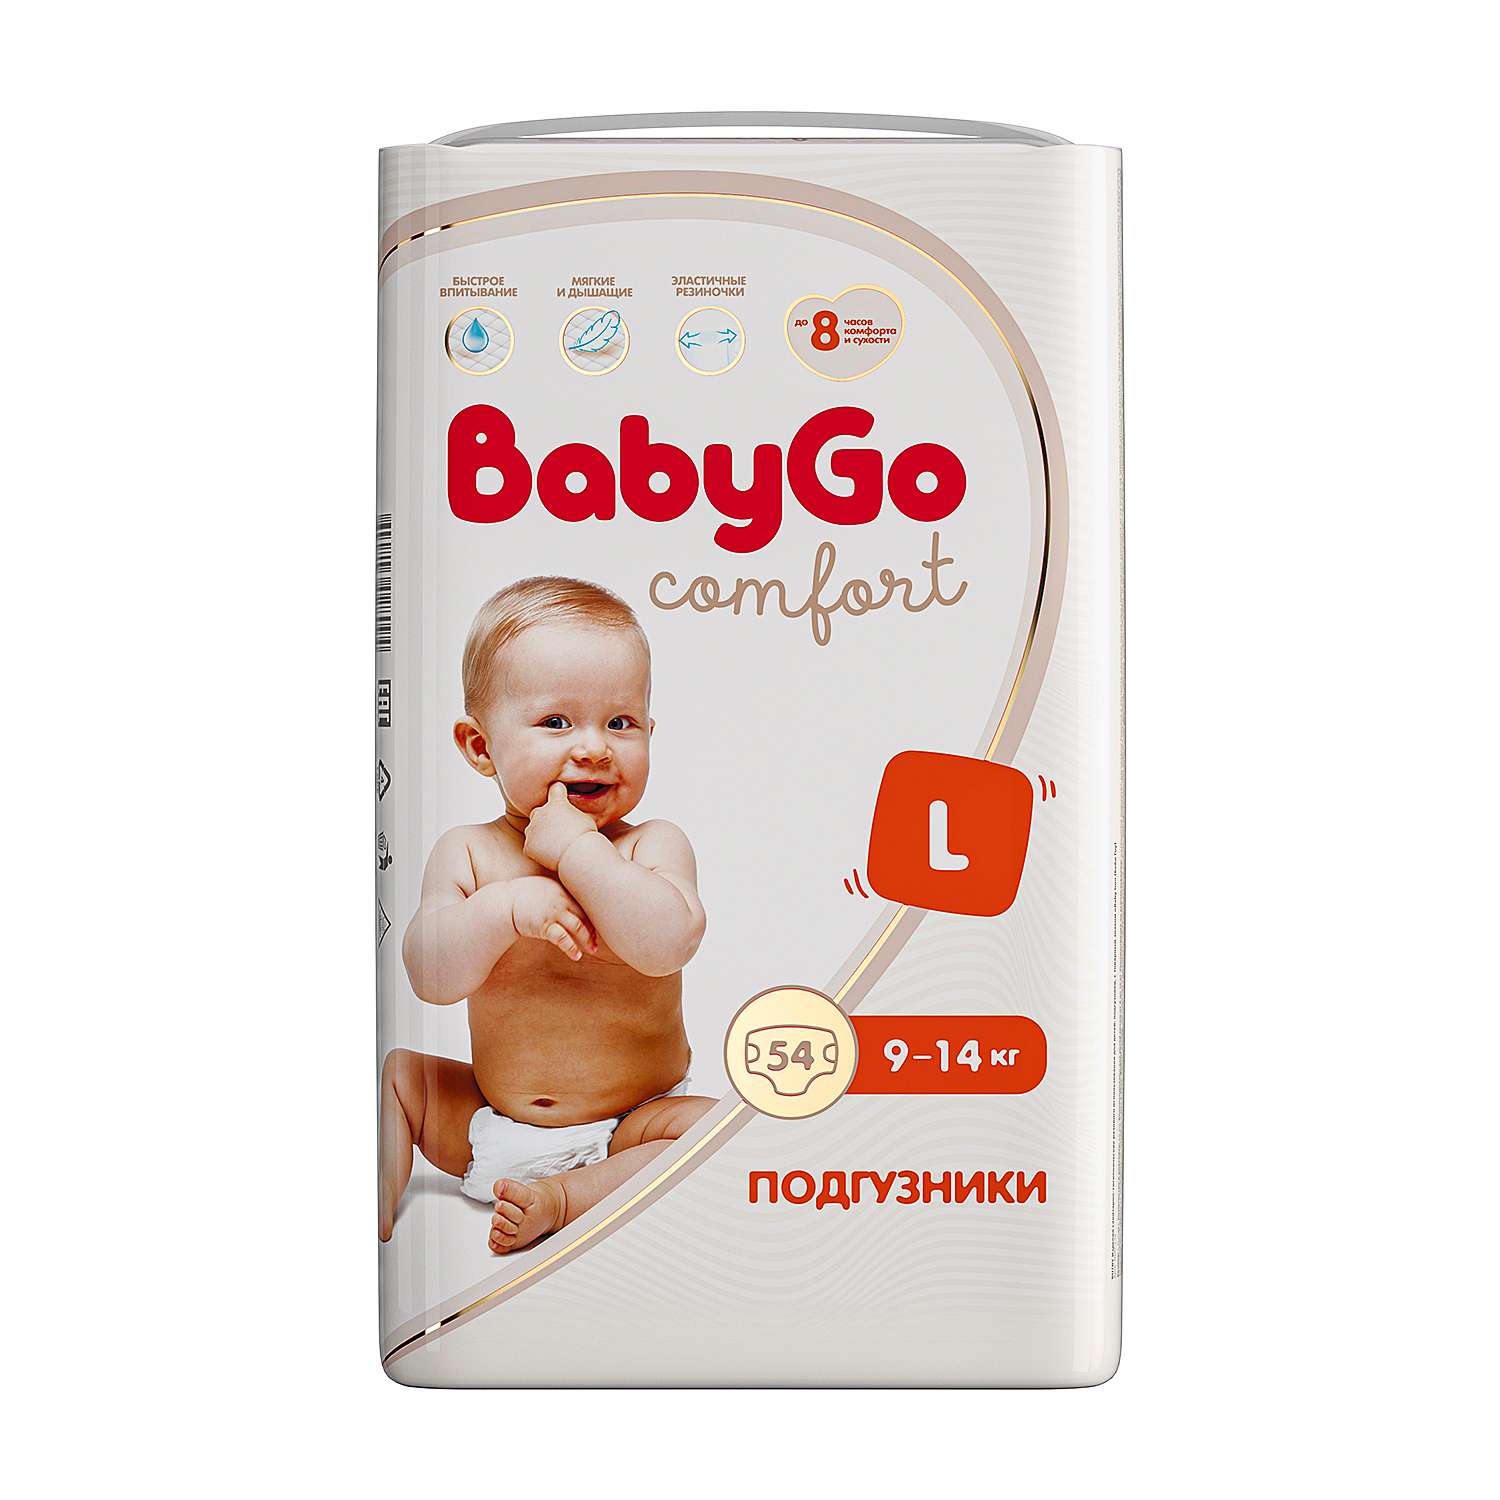 Подгузники BabyGo Comfort L 9-14кг 54шт - фото 1